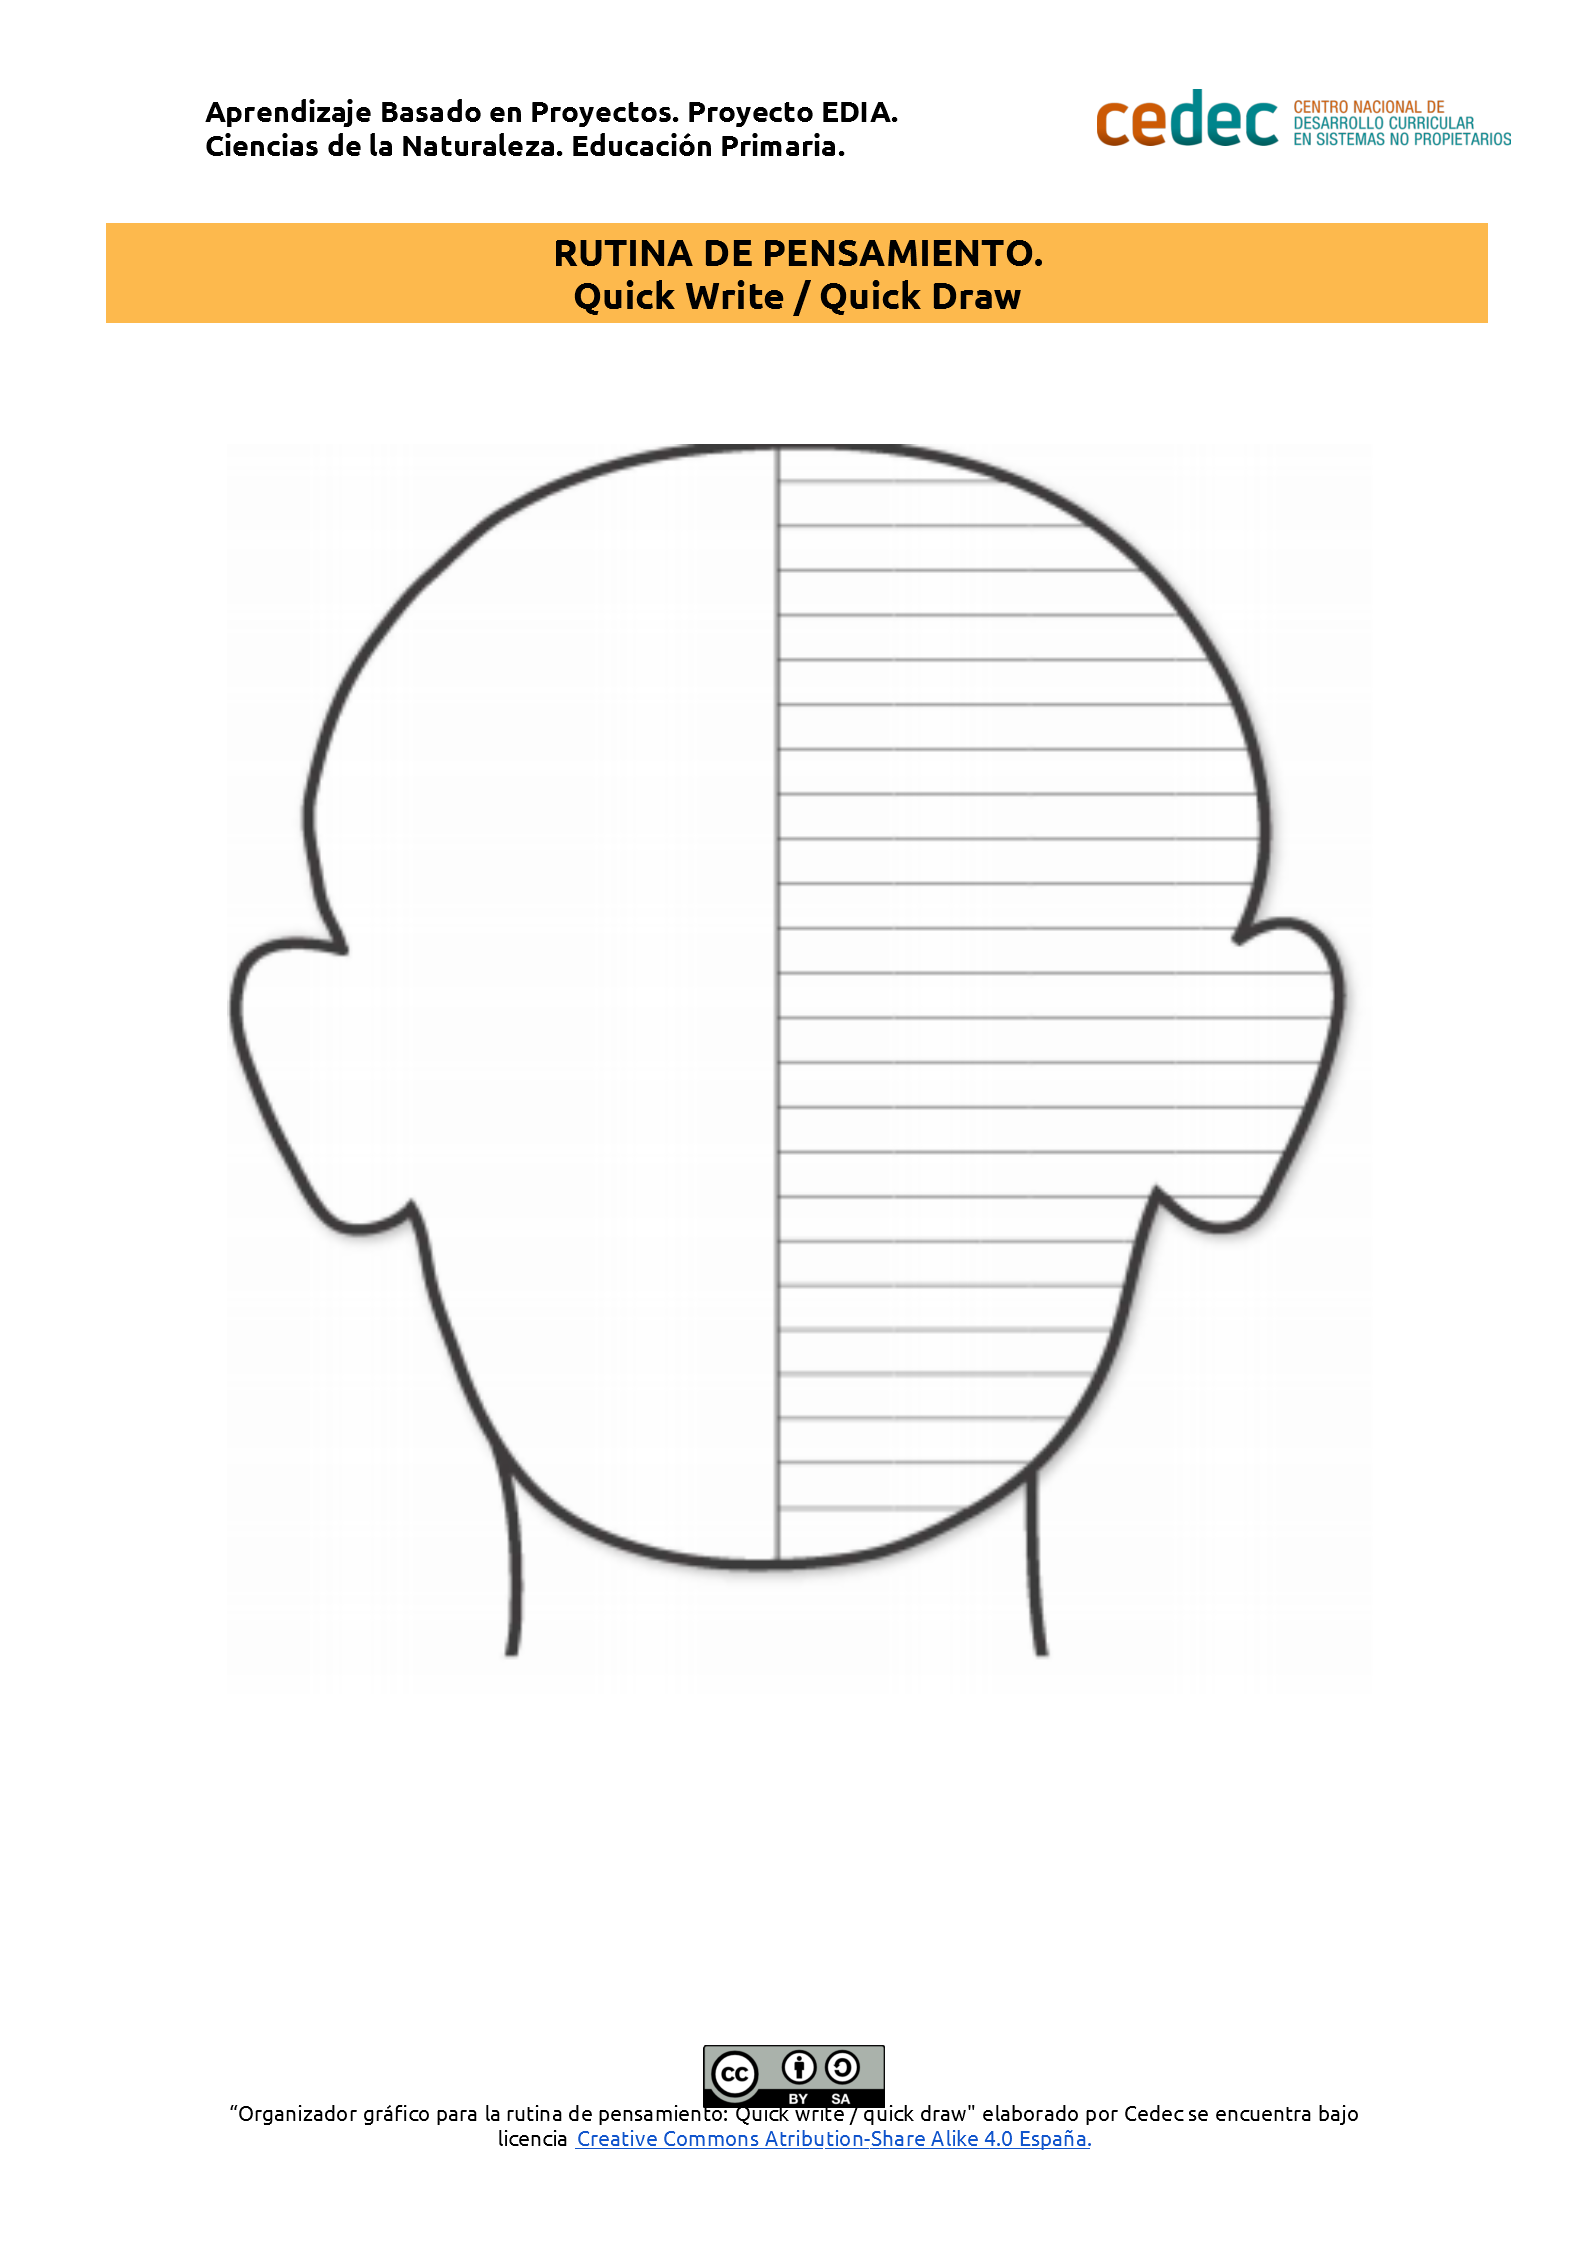 Imagen de la rúbricaRutina de pensamiento “Quick Write / Quick draw”